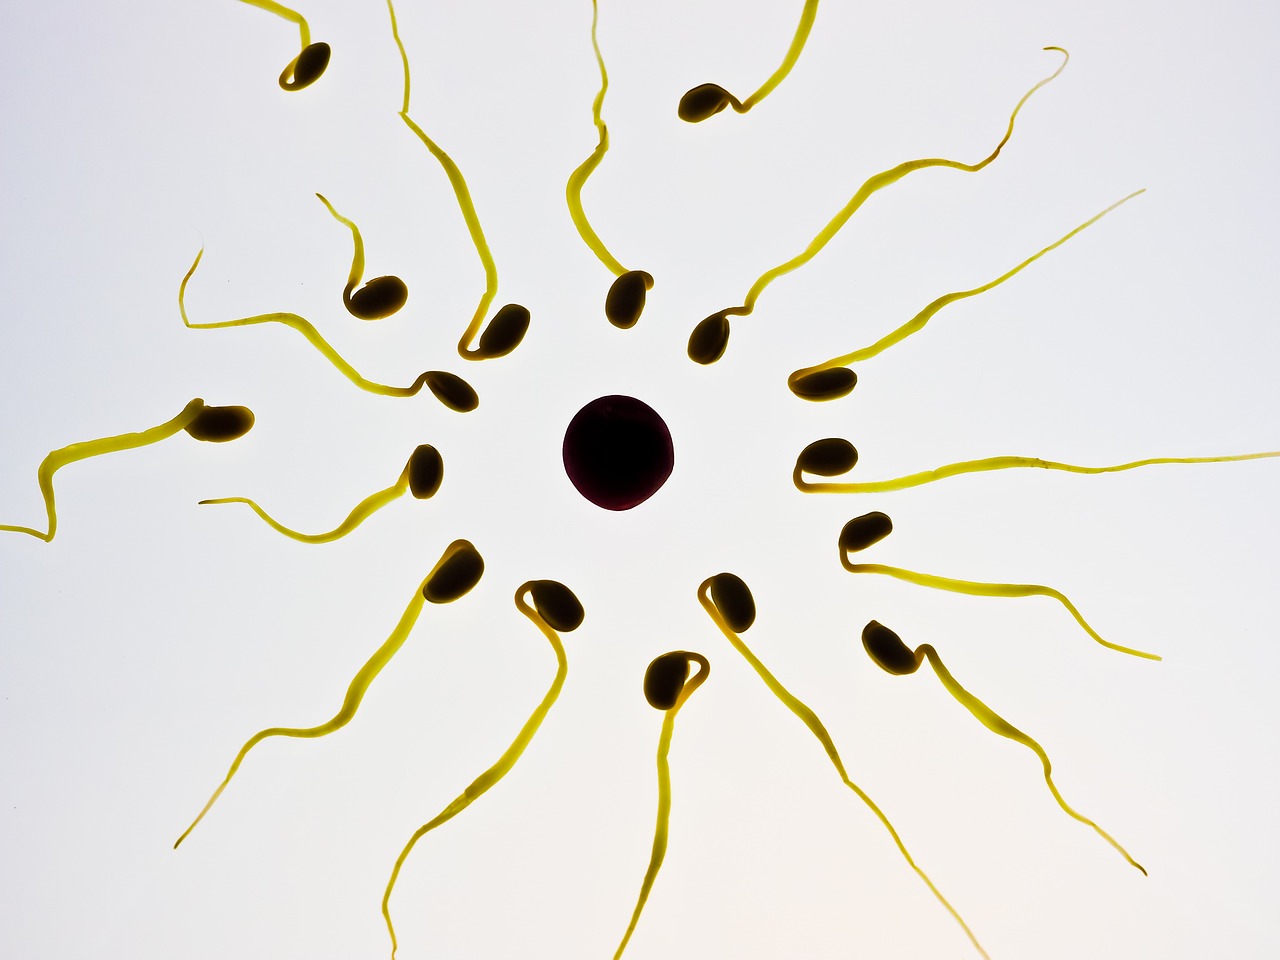 Was ich gerne über IVF vorher gewusst hätte? Ein unerfüllter Kinderwunsch ist eine große Herausforderung im Leben einer Frau